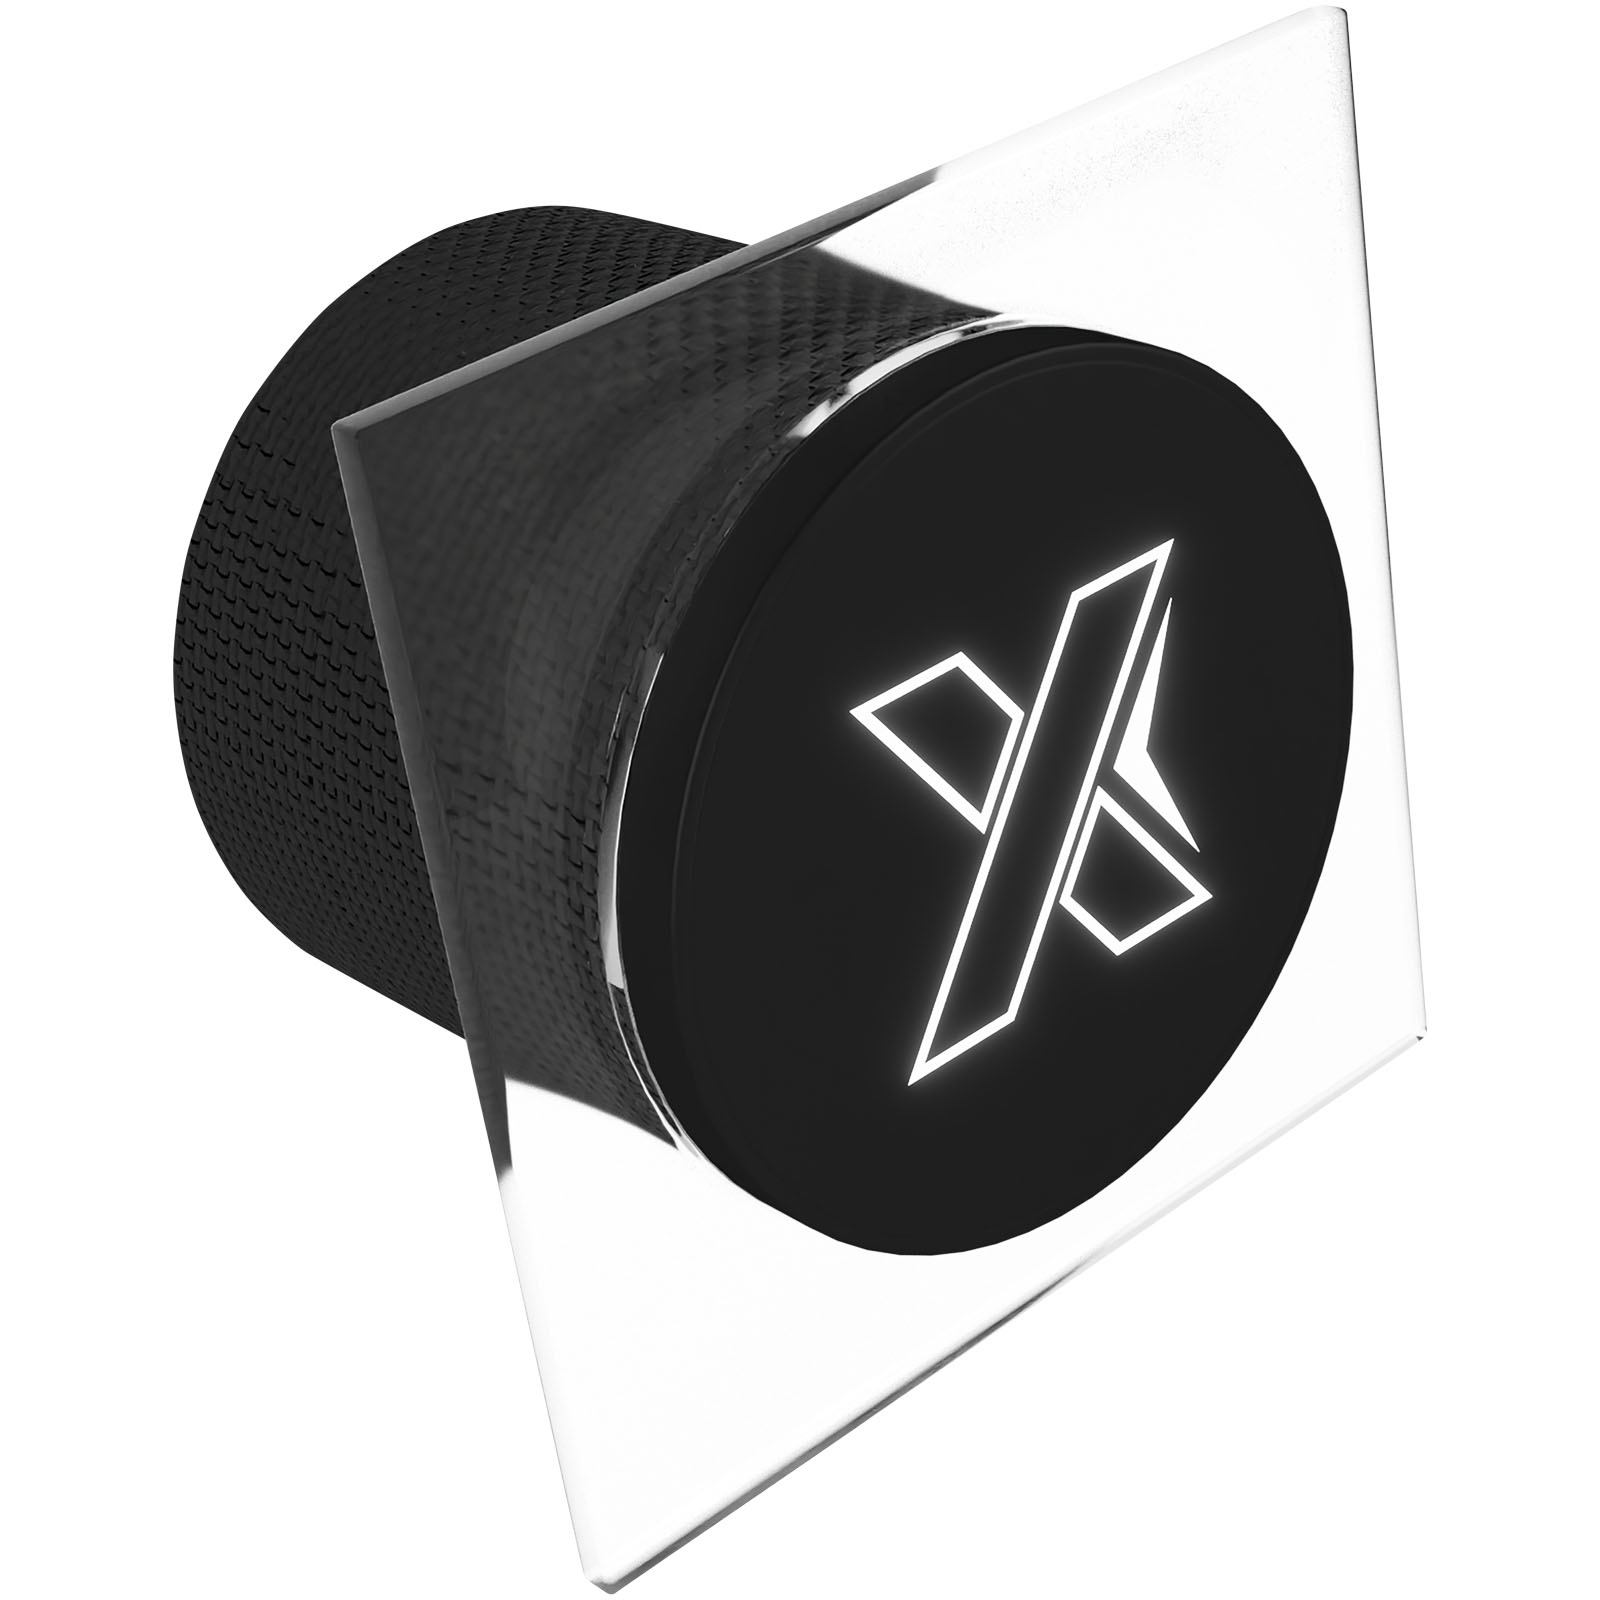 Haut-parleur Bluetooth avec logo lumineux et microphone - Subligny - Zaprinta France